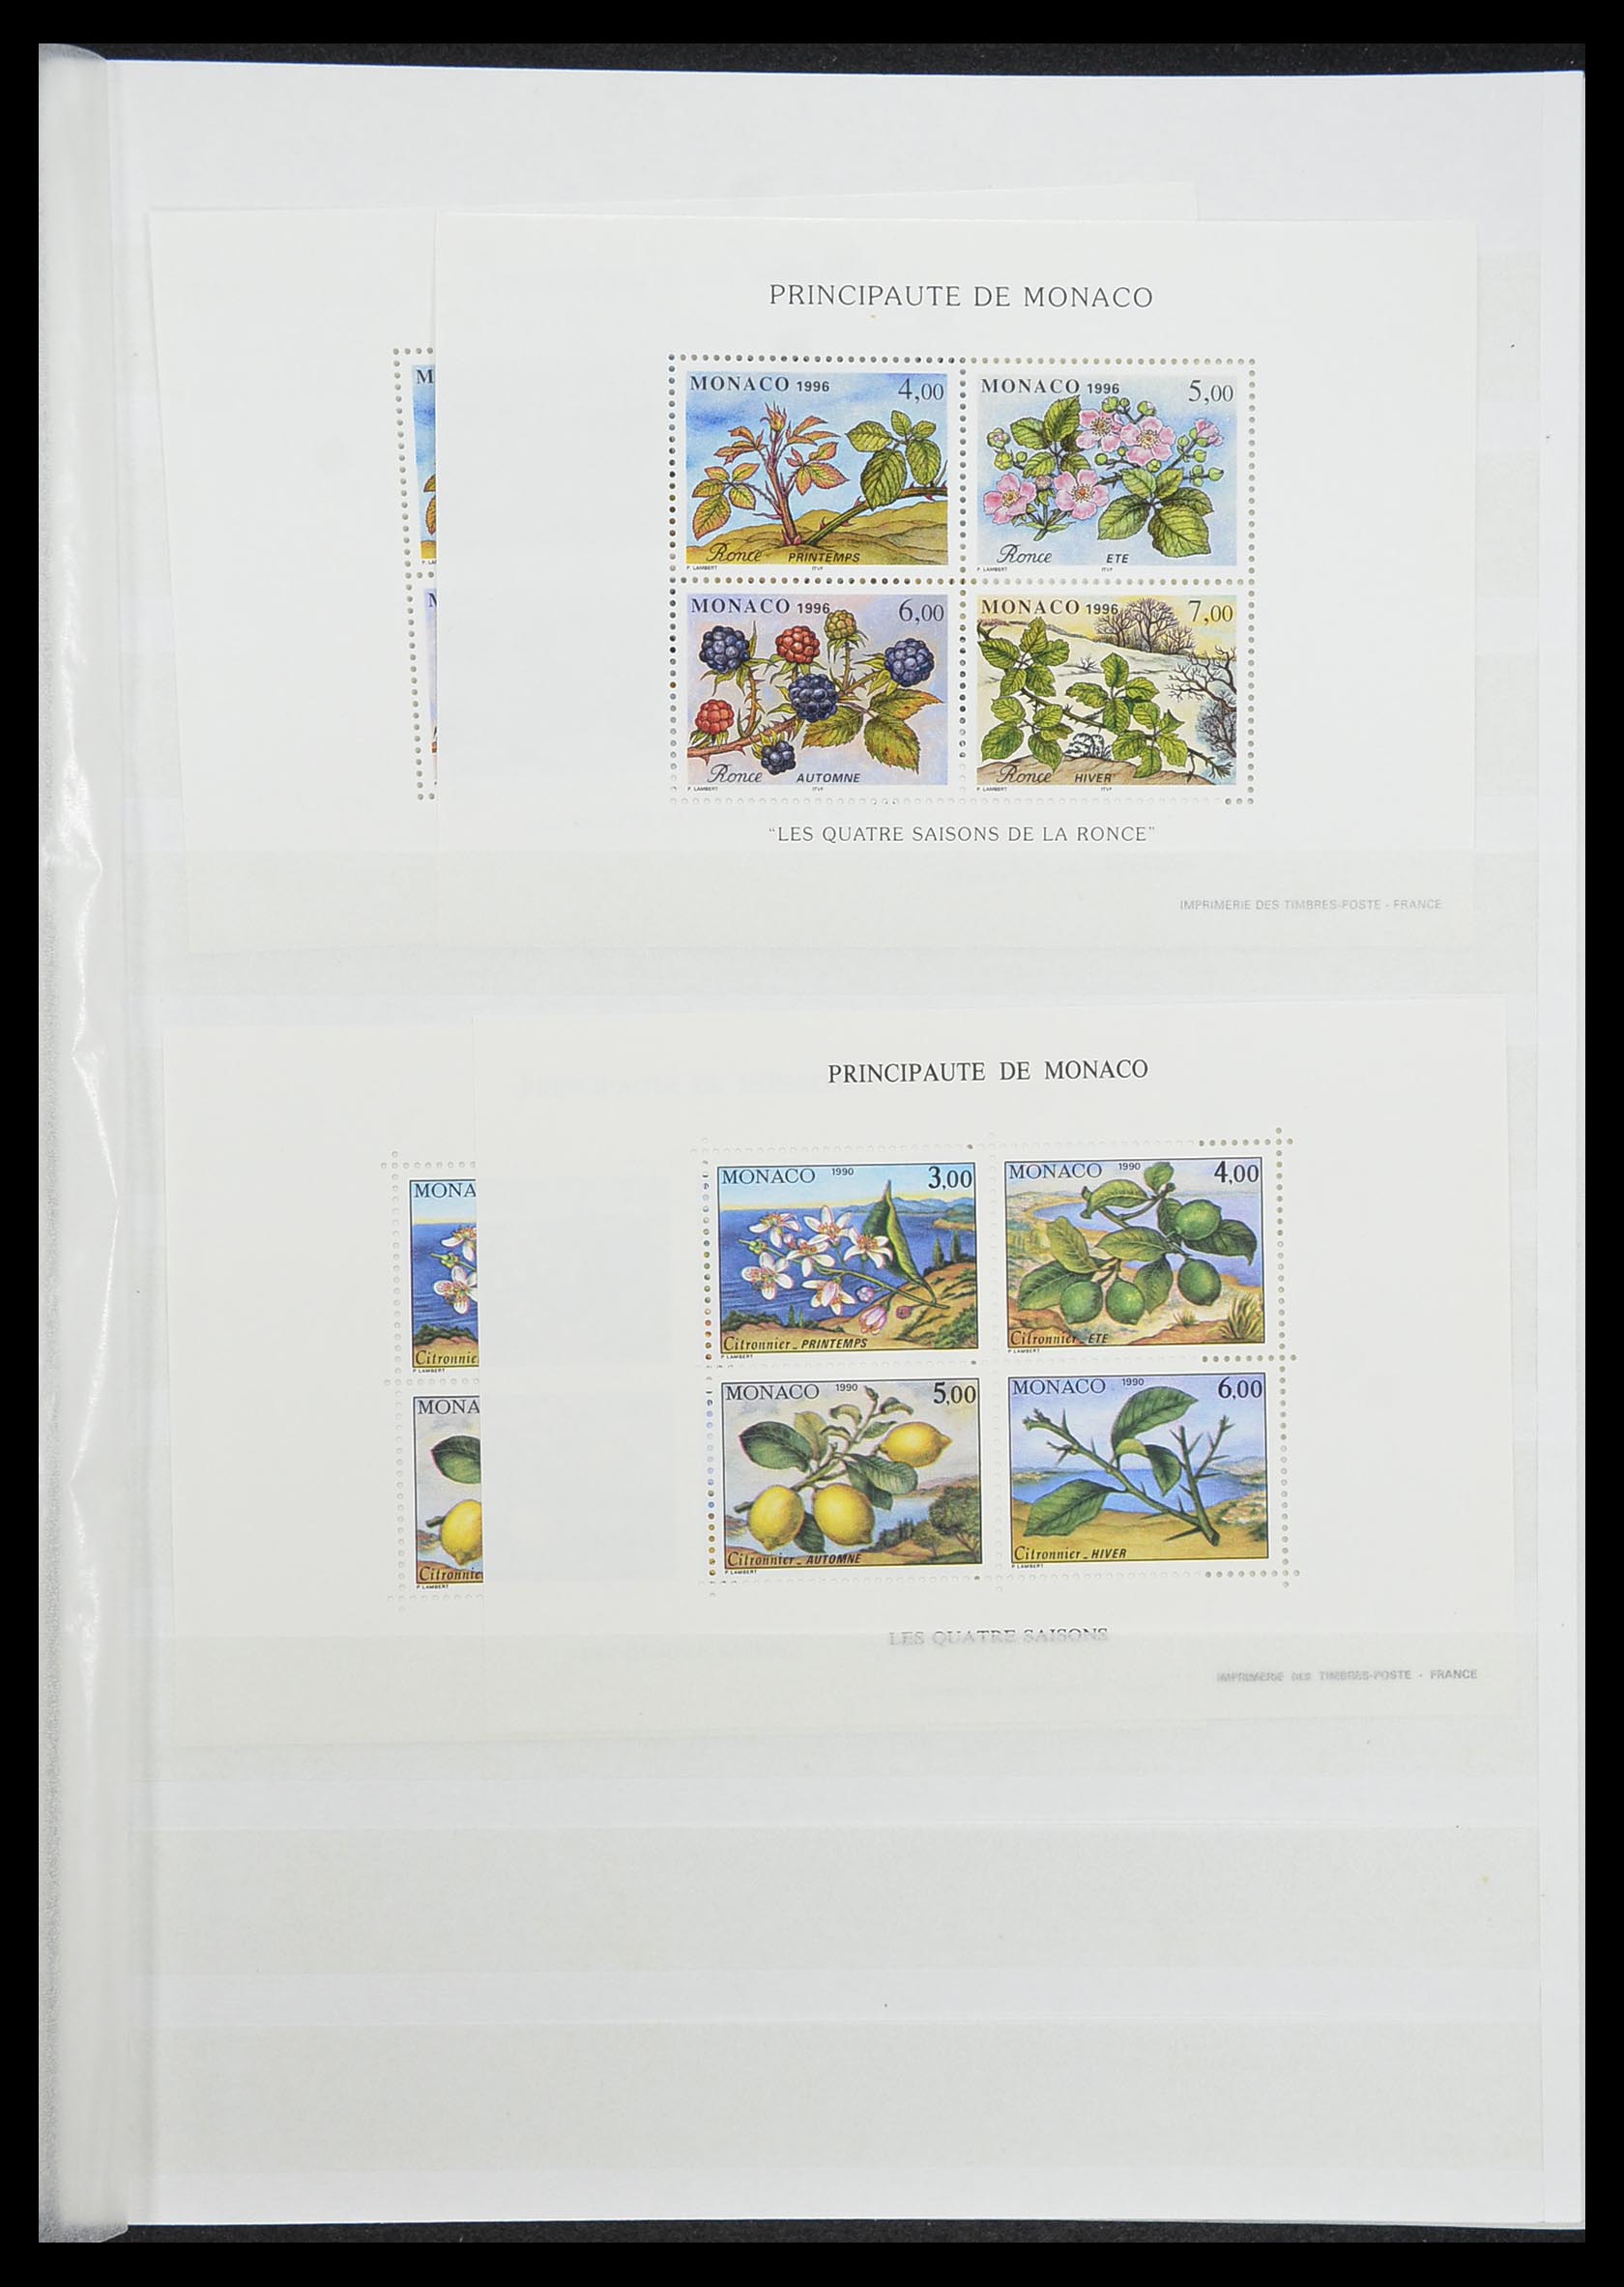 33833 025 - Stamp collection 33833 Monaco souvenir sheets 1979-2015.